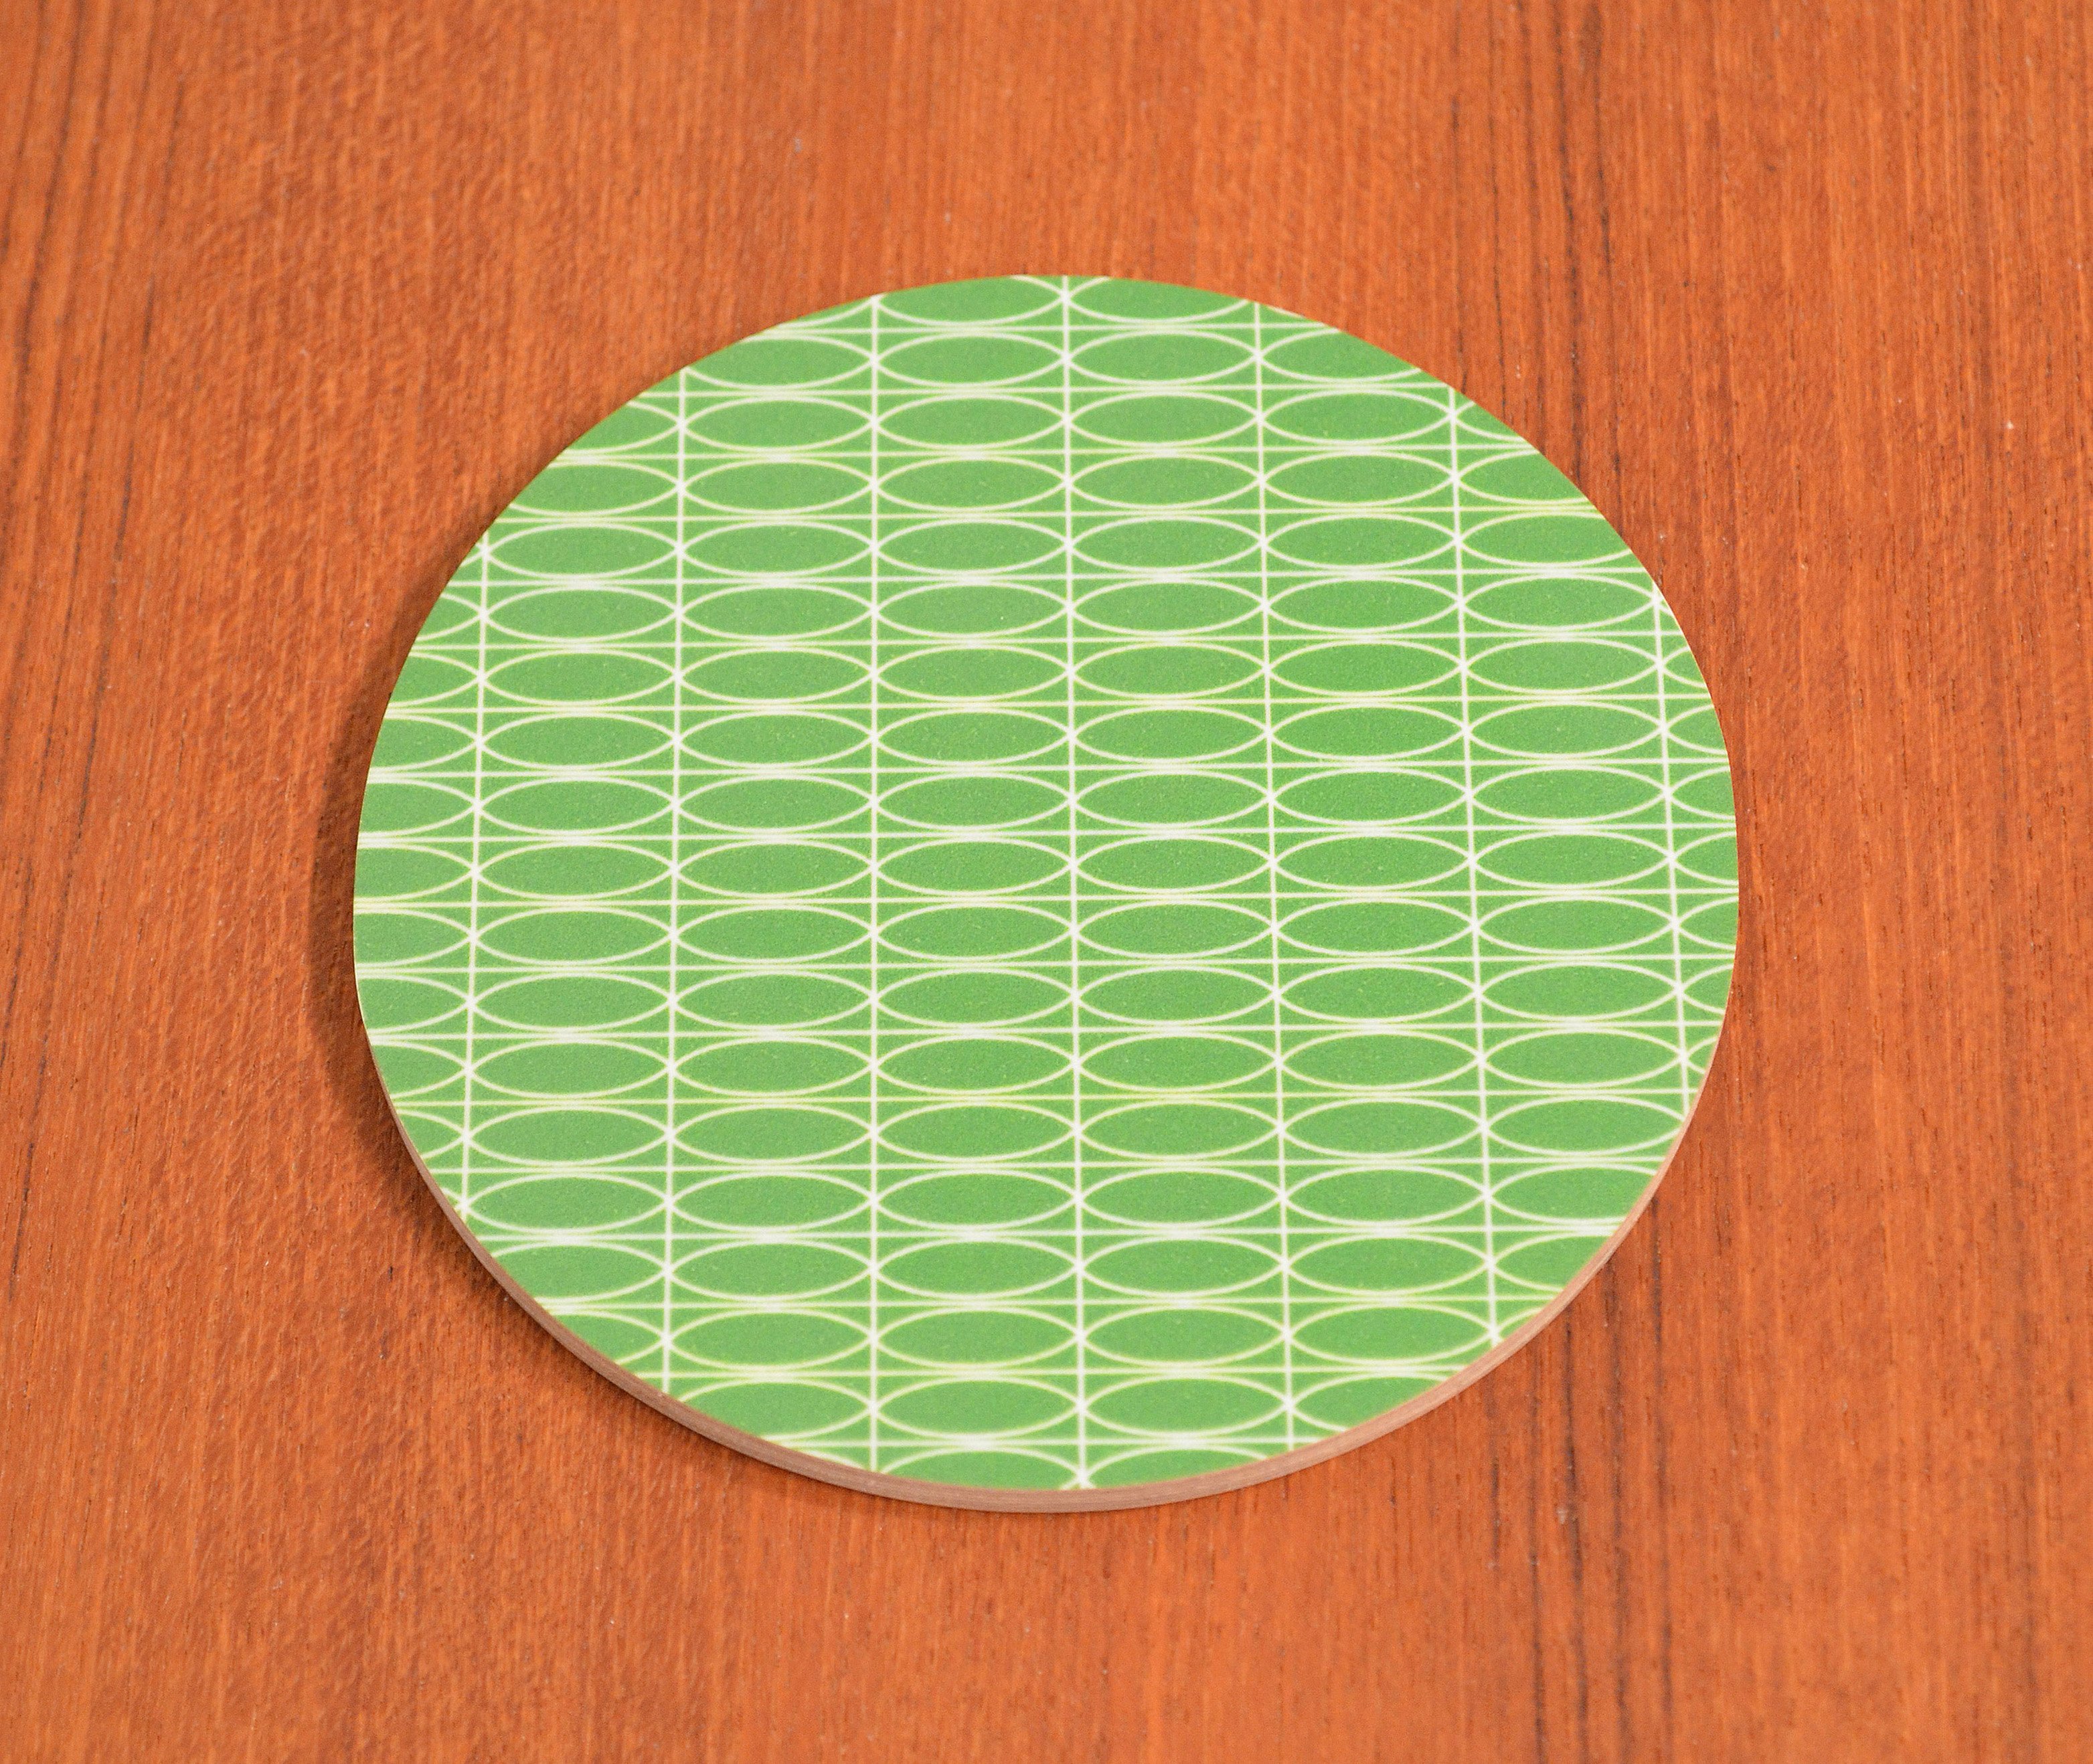 Glasunderlägget Oval, grönt,  med retrokänsla, runt 9 cm,  i björk,